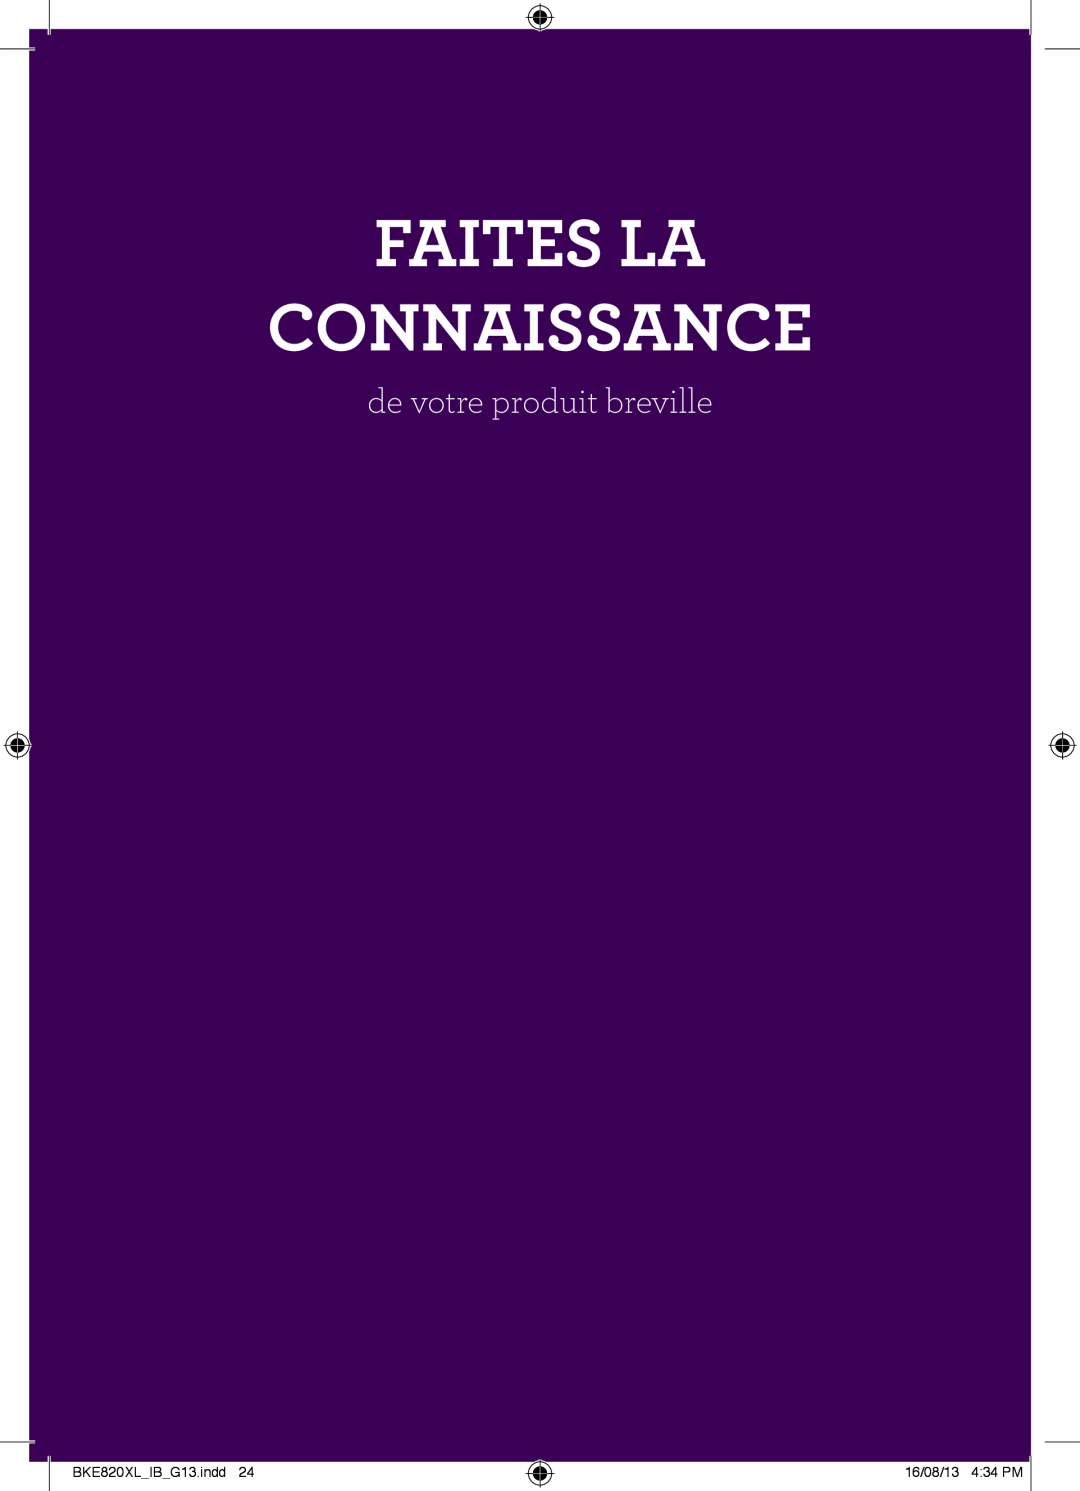 Breville the IQ Kettle manual Faites La Connaissance, de votre produit breville, BKE820XLIBG13.indd, 16/08/13 434 PM 